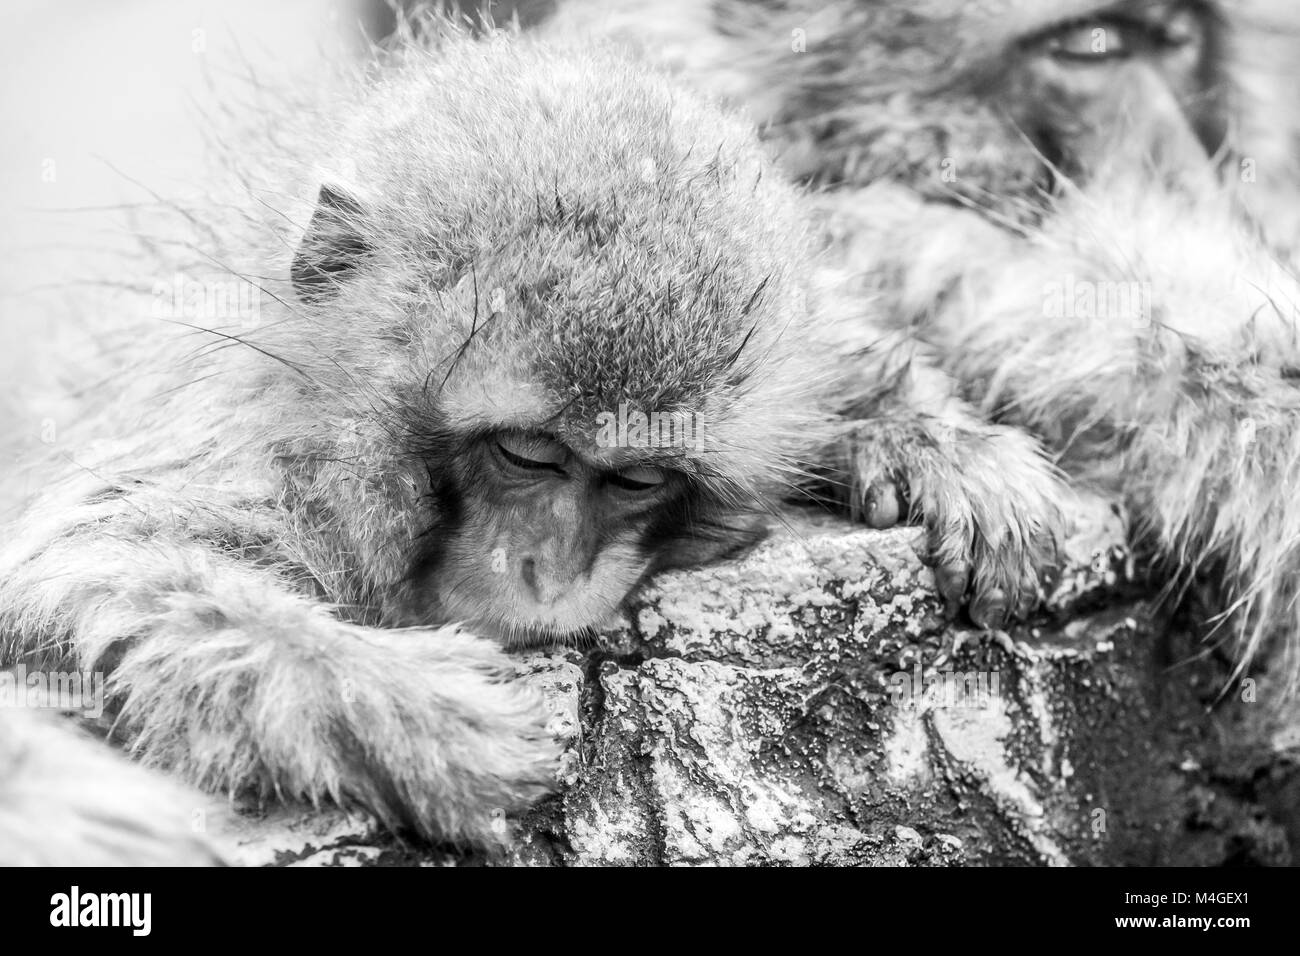 Carino neve giapponese monkey dormire in una primavera calda. Immagine in bianco e nero. Foto Stock